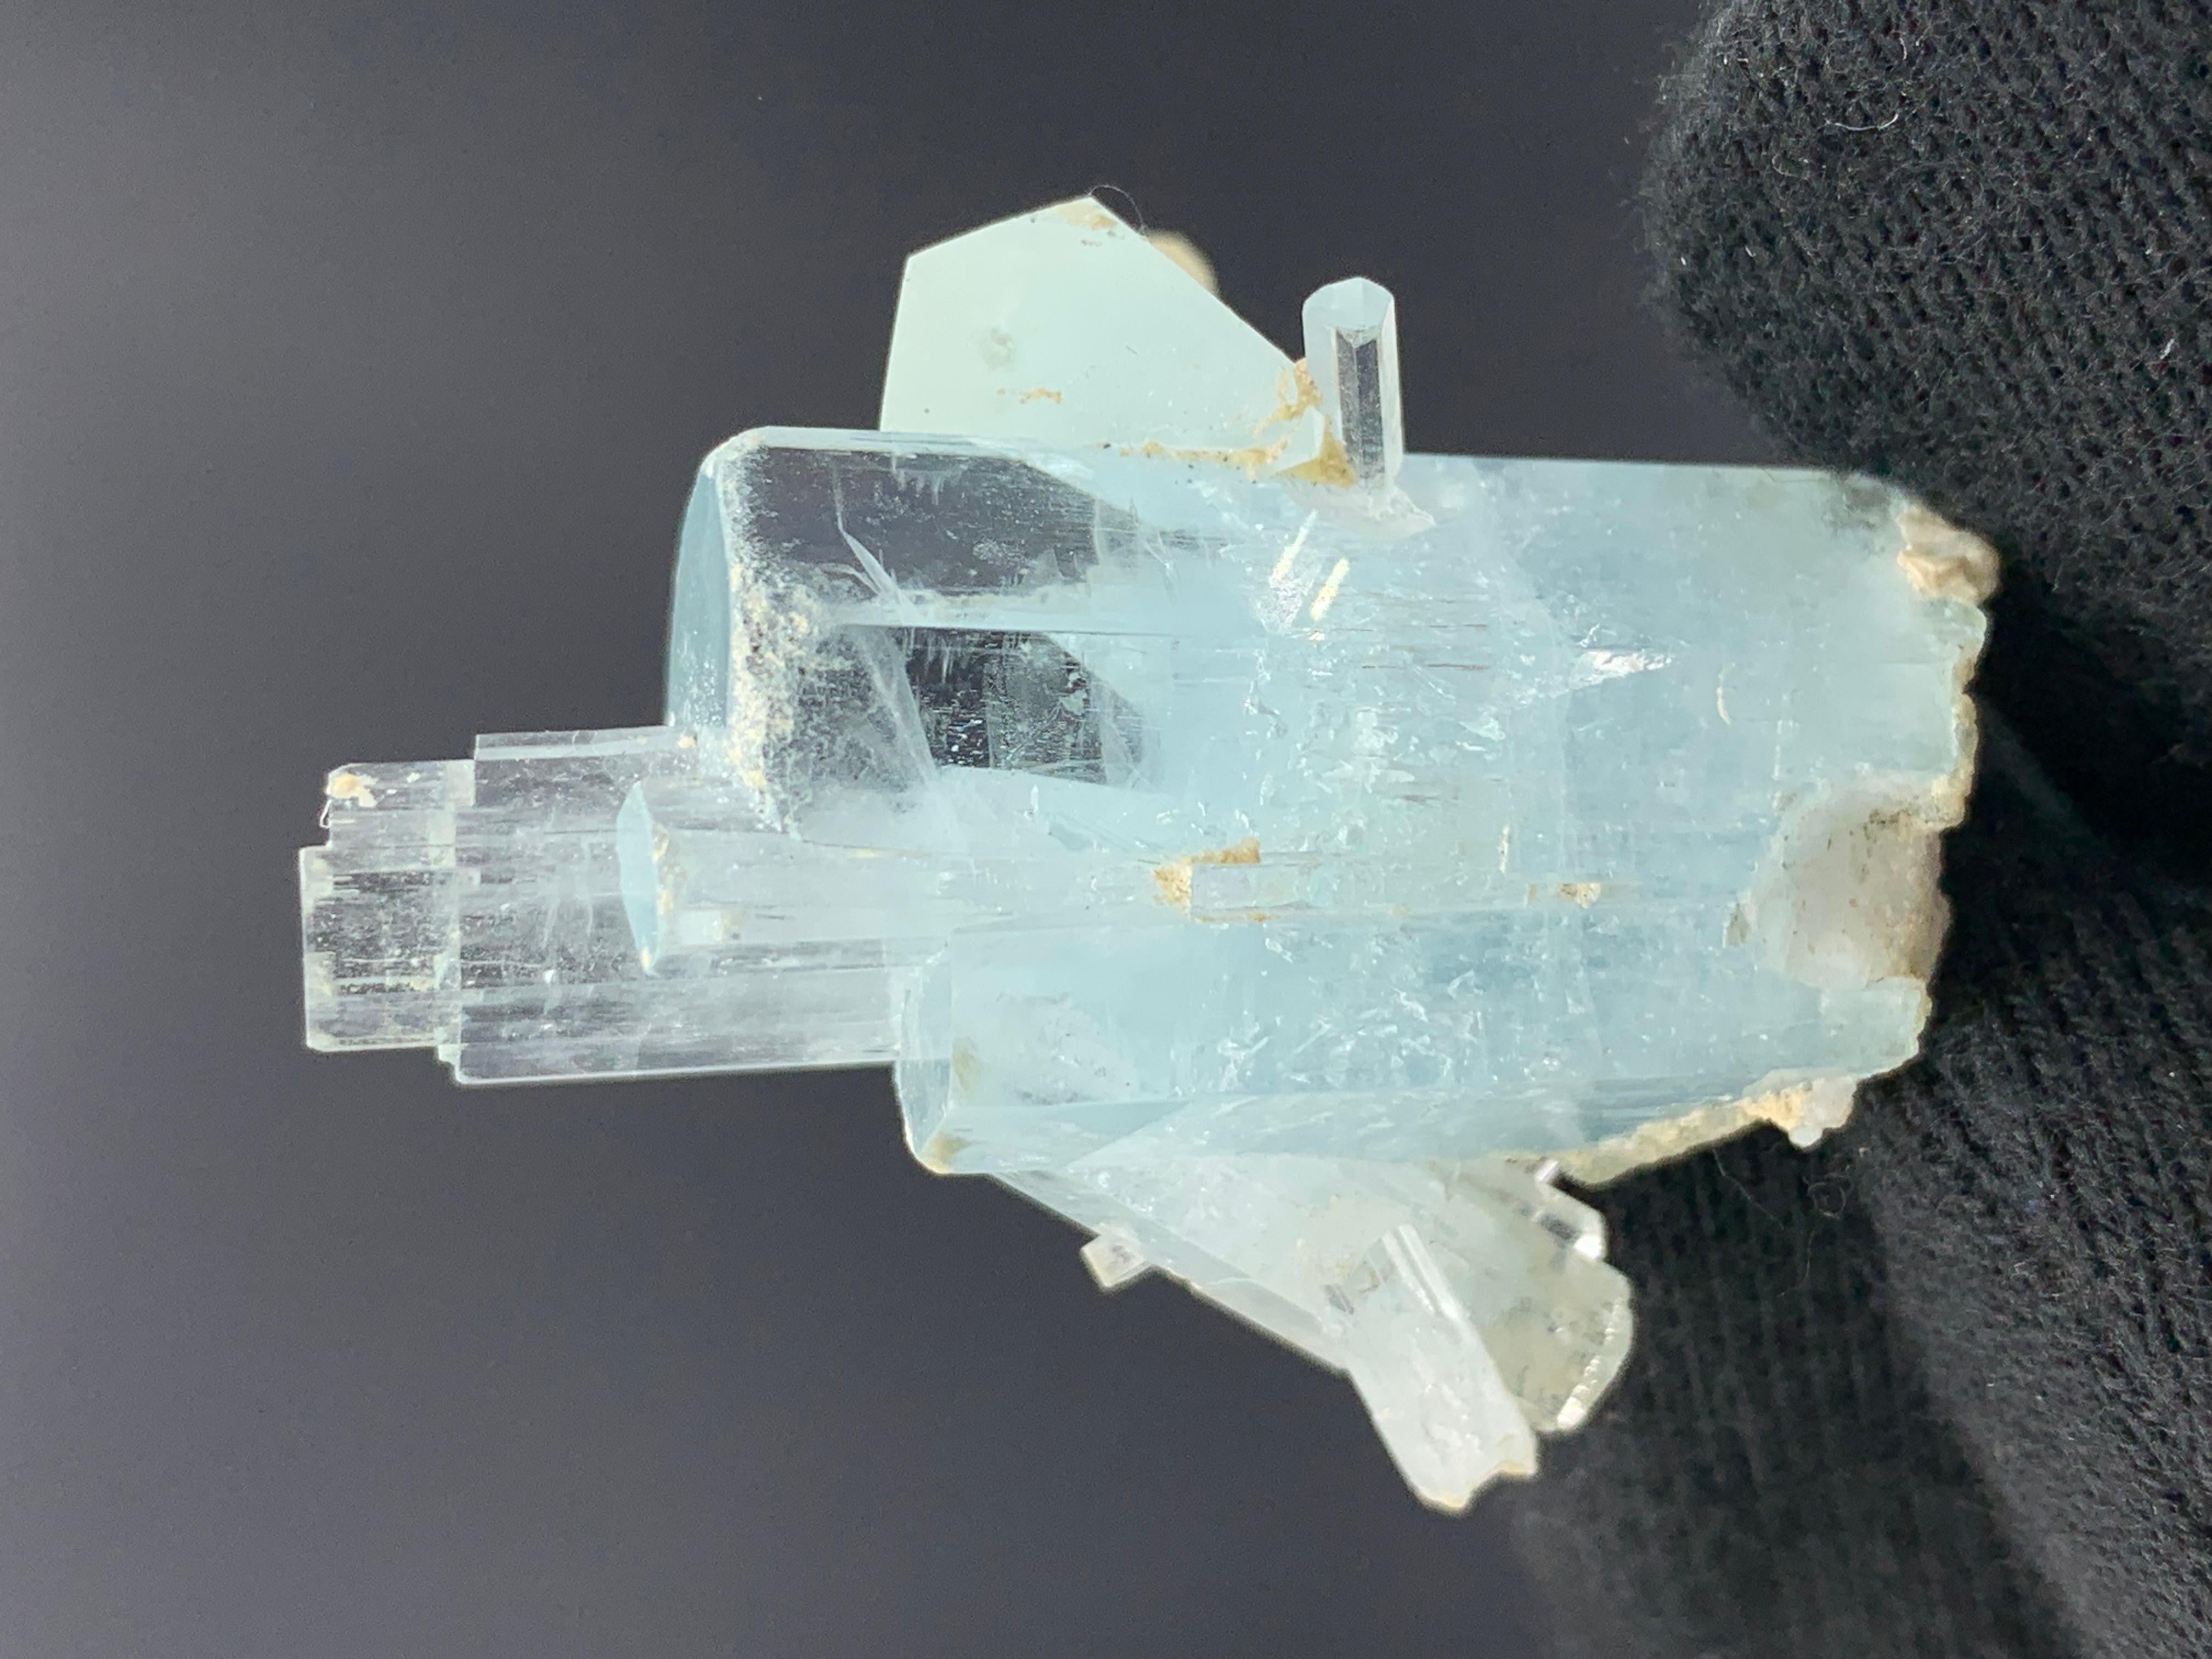 Élégant bouleau en cristal d'aigue-marine de 18,82 grammes provenant de la vallée de Skardu, Pakistan 

Poids : 18,82 grammes 
Dimension : 3,9 x 3,7 x 2 cm
Origine : Vallée de Shigar, district de Skardu, province de Gilgit Baltistan, Pakistan